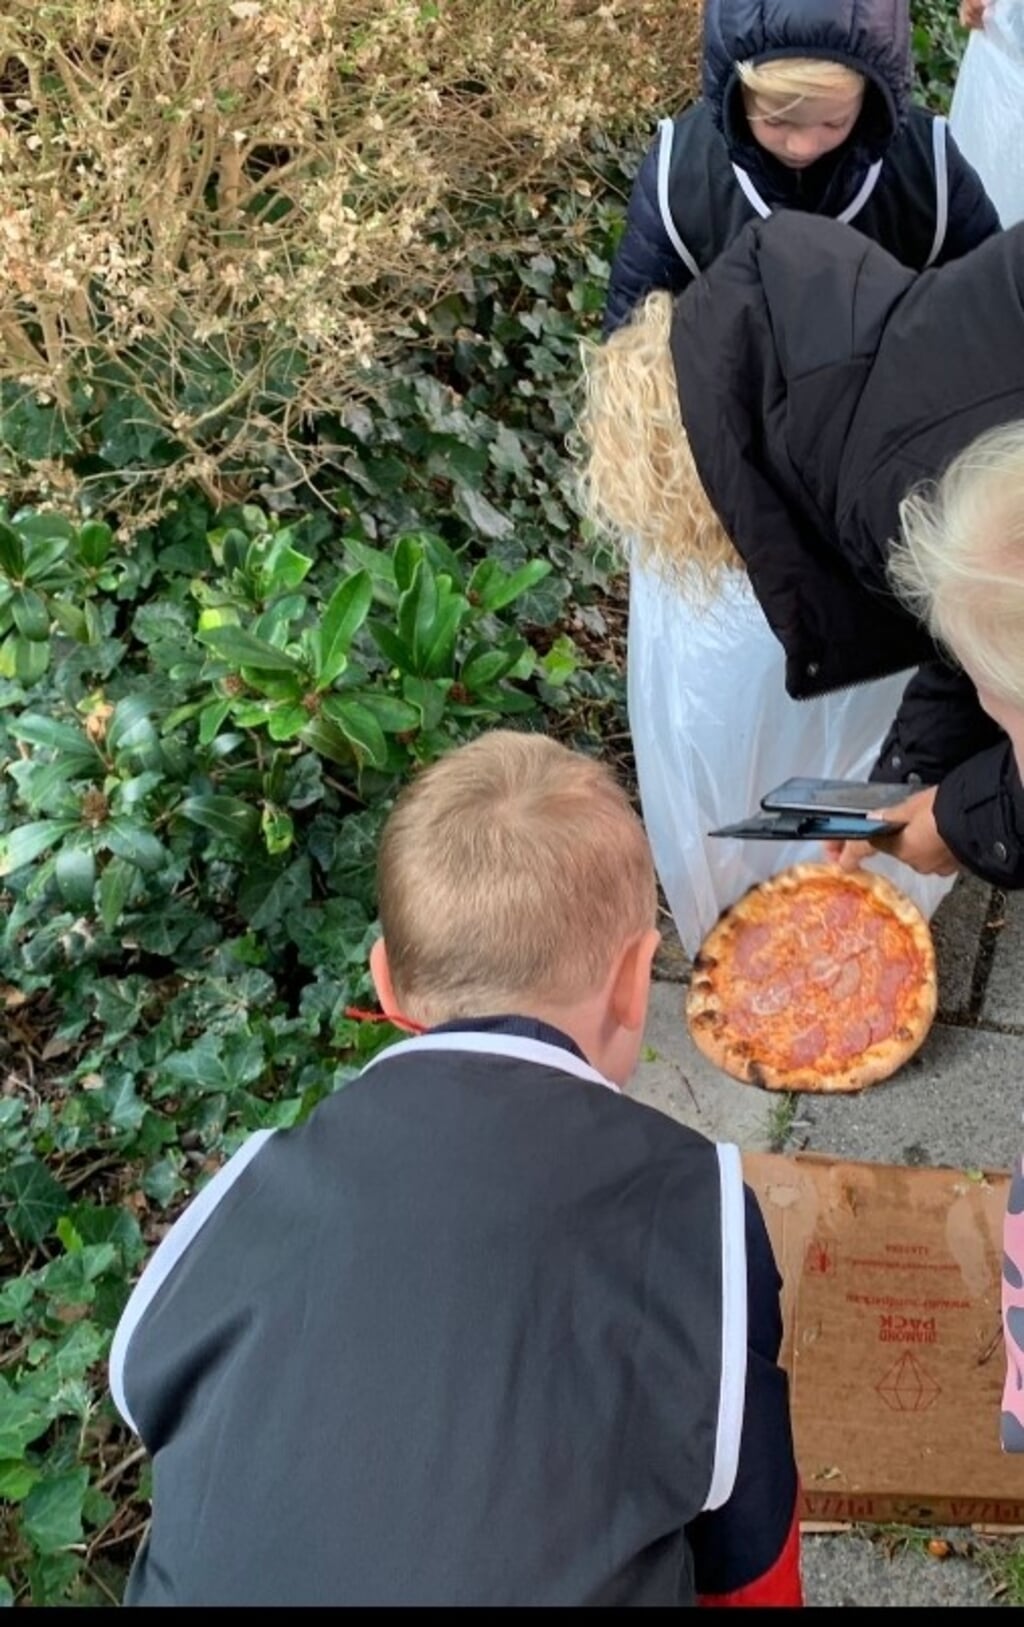 Van wie is de gevonden pizza?  Mail naar: oeshavandijk@rodi.nl.